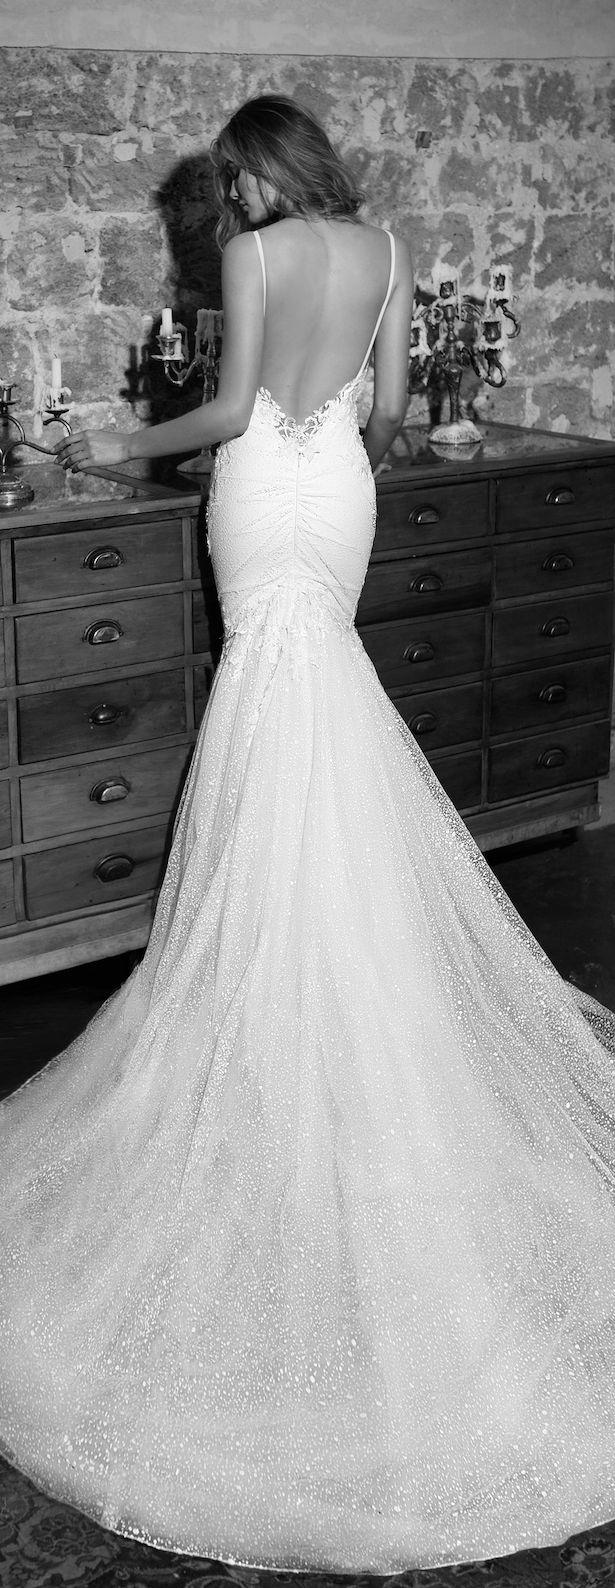 زفاف - Wedding Dresses By Julie Vino 2017 Romanzo Collection